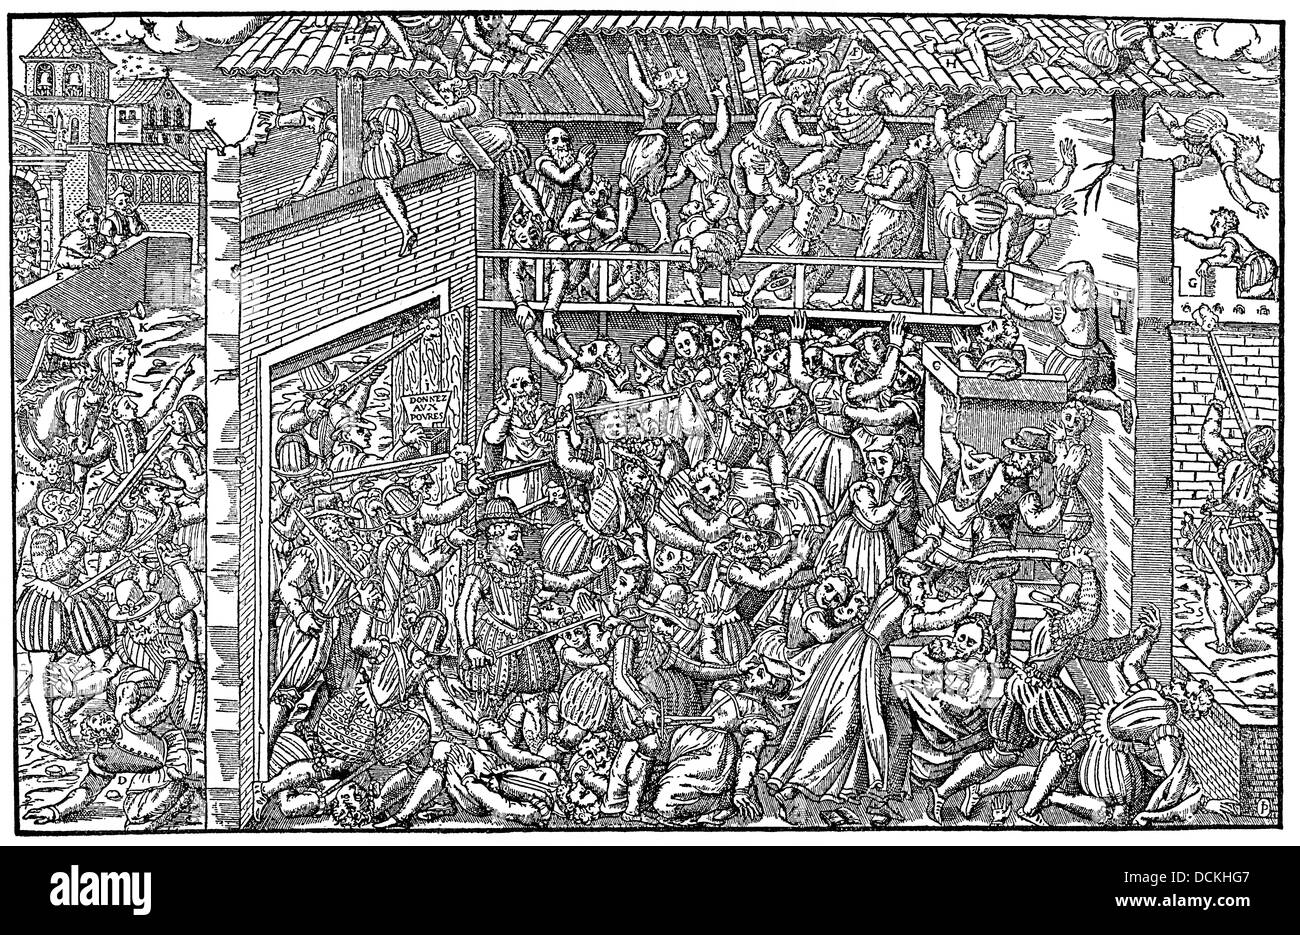 Le massacre de la Saint-Barthélemy, la veille du mariage de sang parisien, 1572, par ordre de Catherine de Médicis Huguenots ont été assassinés Banque D'Images